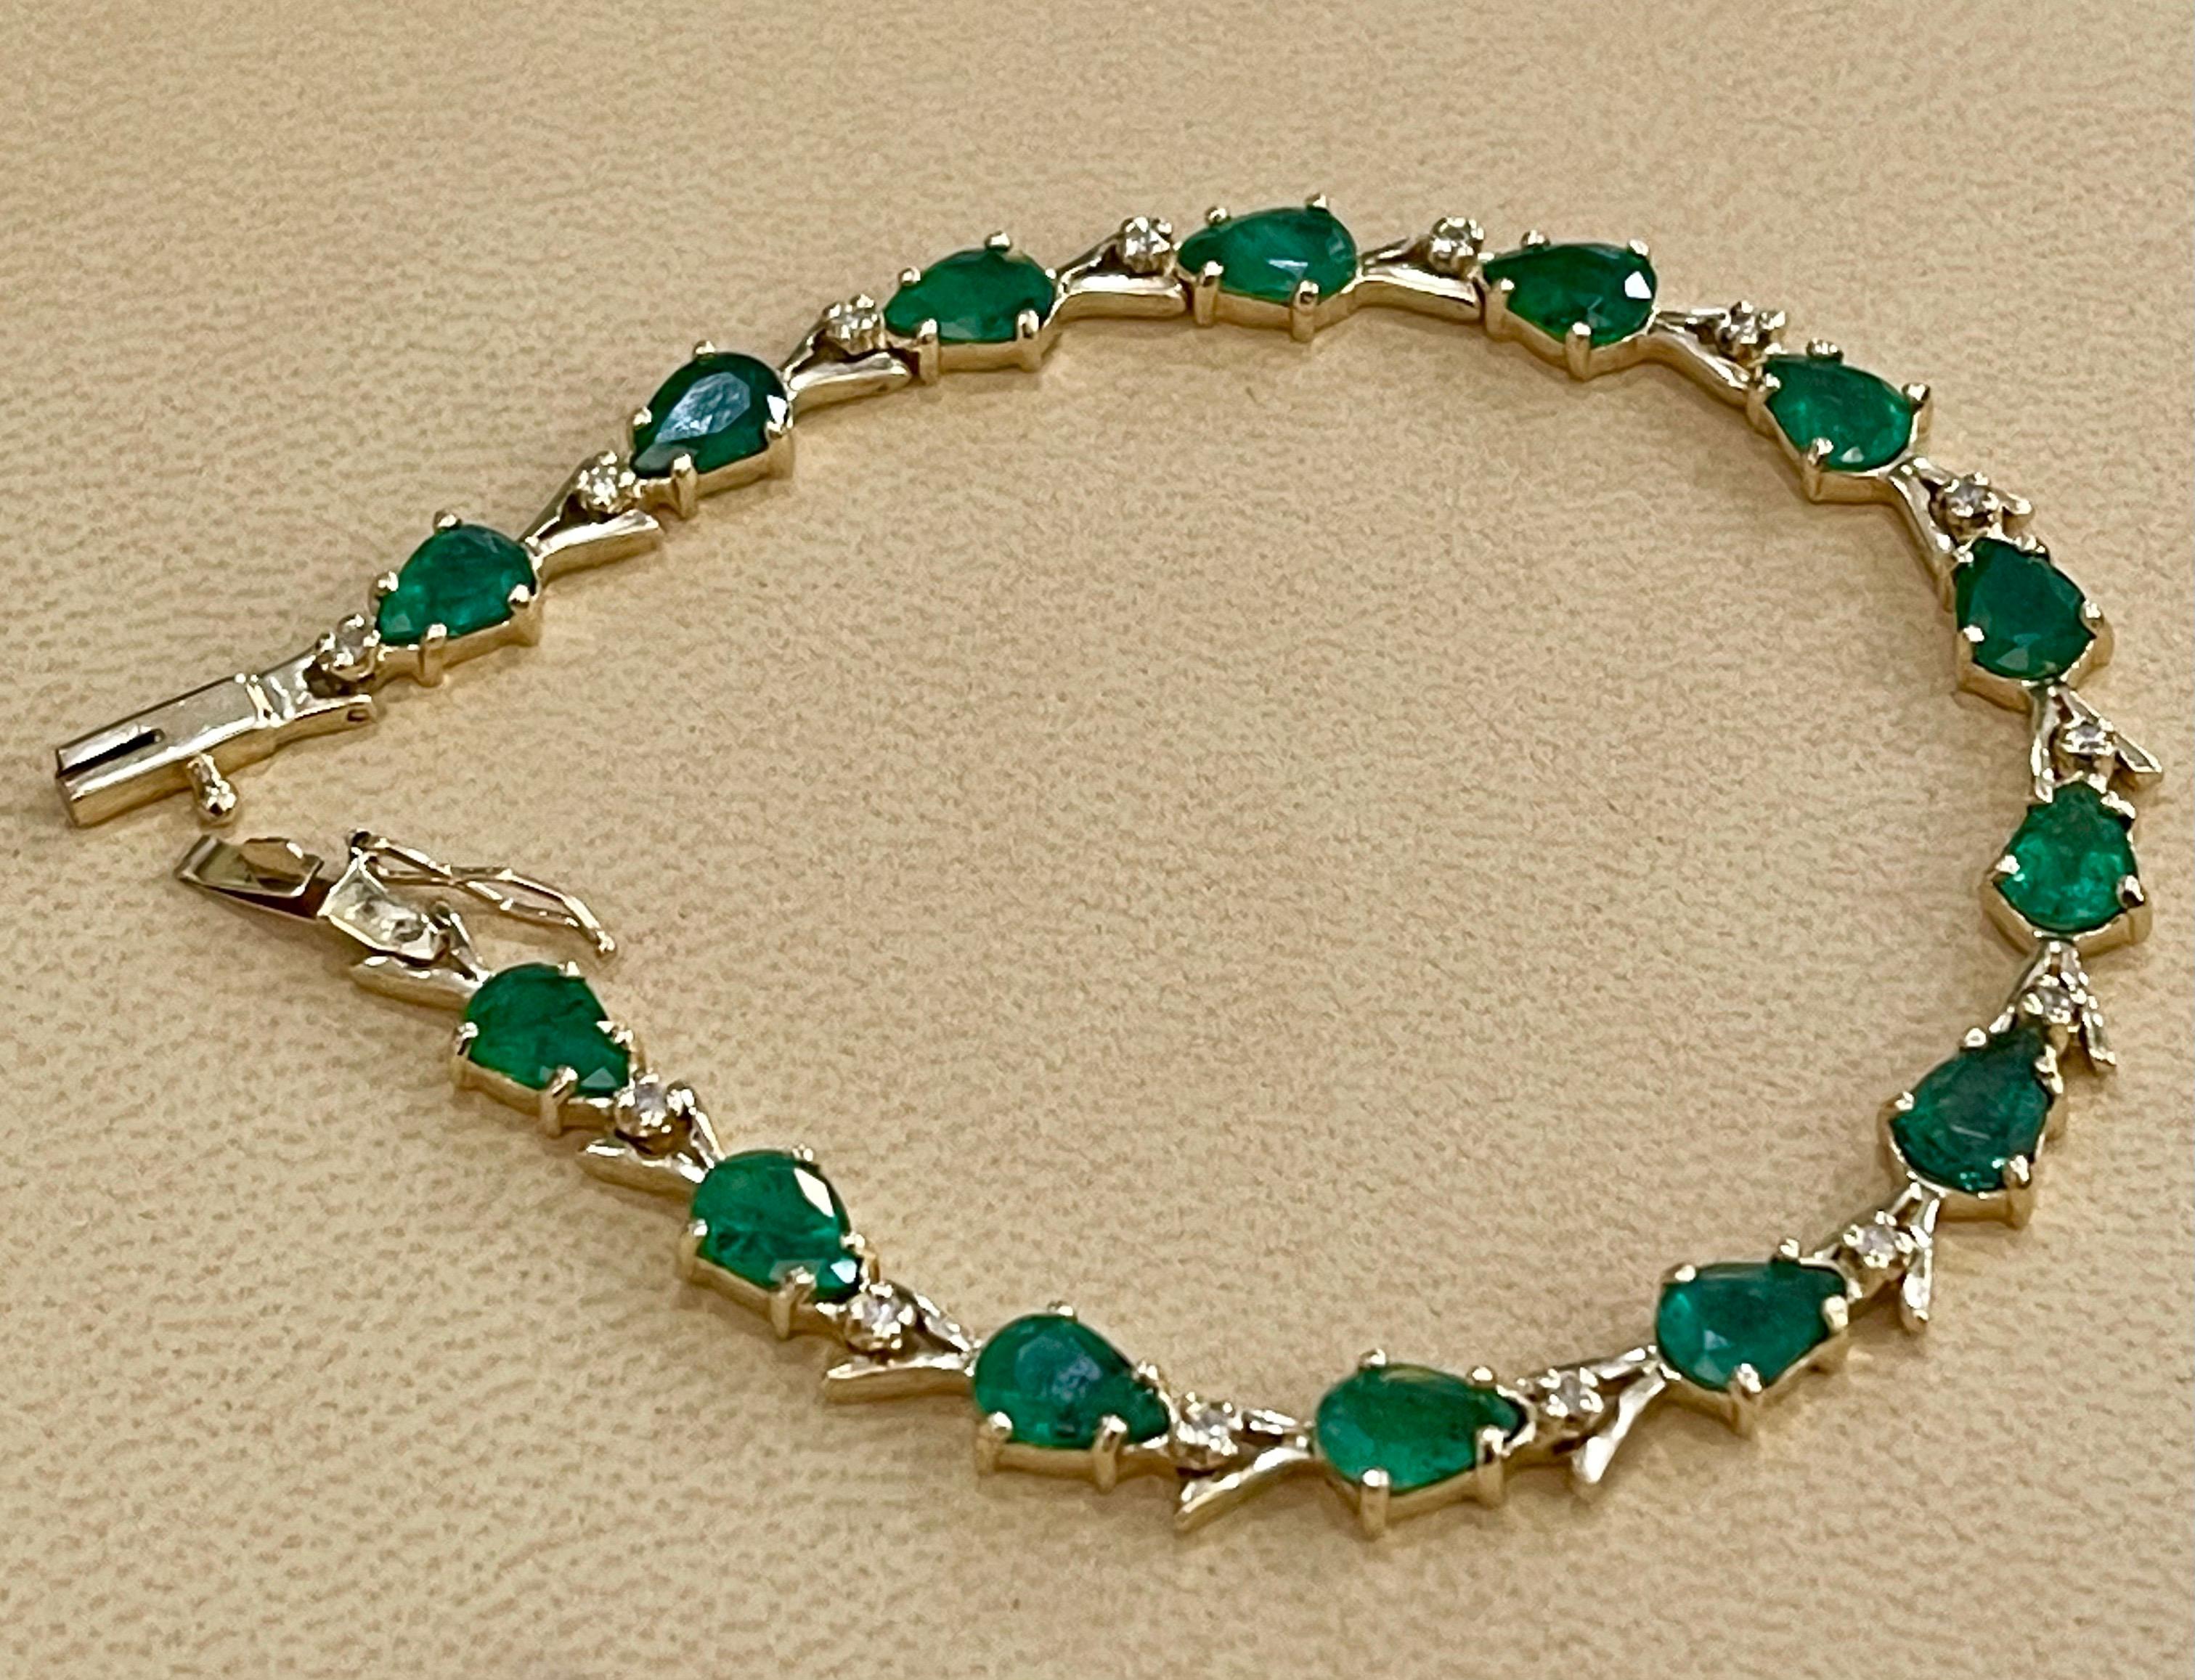  Dieses außergewöhnlich günstige Tennis  armband hat  14 Steine in Birnenform  Smaragde  . Jeder Smaragd ist durch einen einzelnen Diamanten voneinander getrennt. Das Gesamtgewicht der Smaragde beträgt  etwa 7 Karat. Die Gesamtzahl der Diamanten